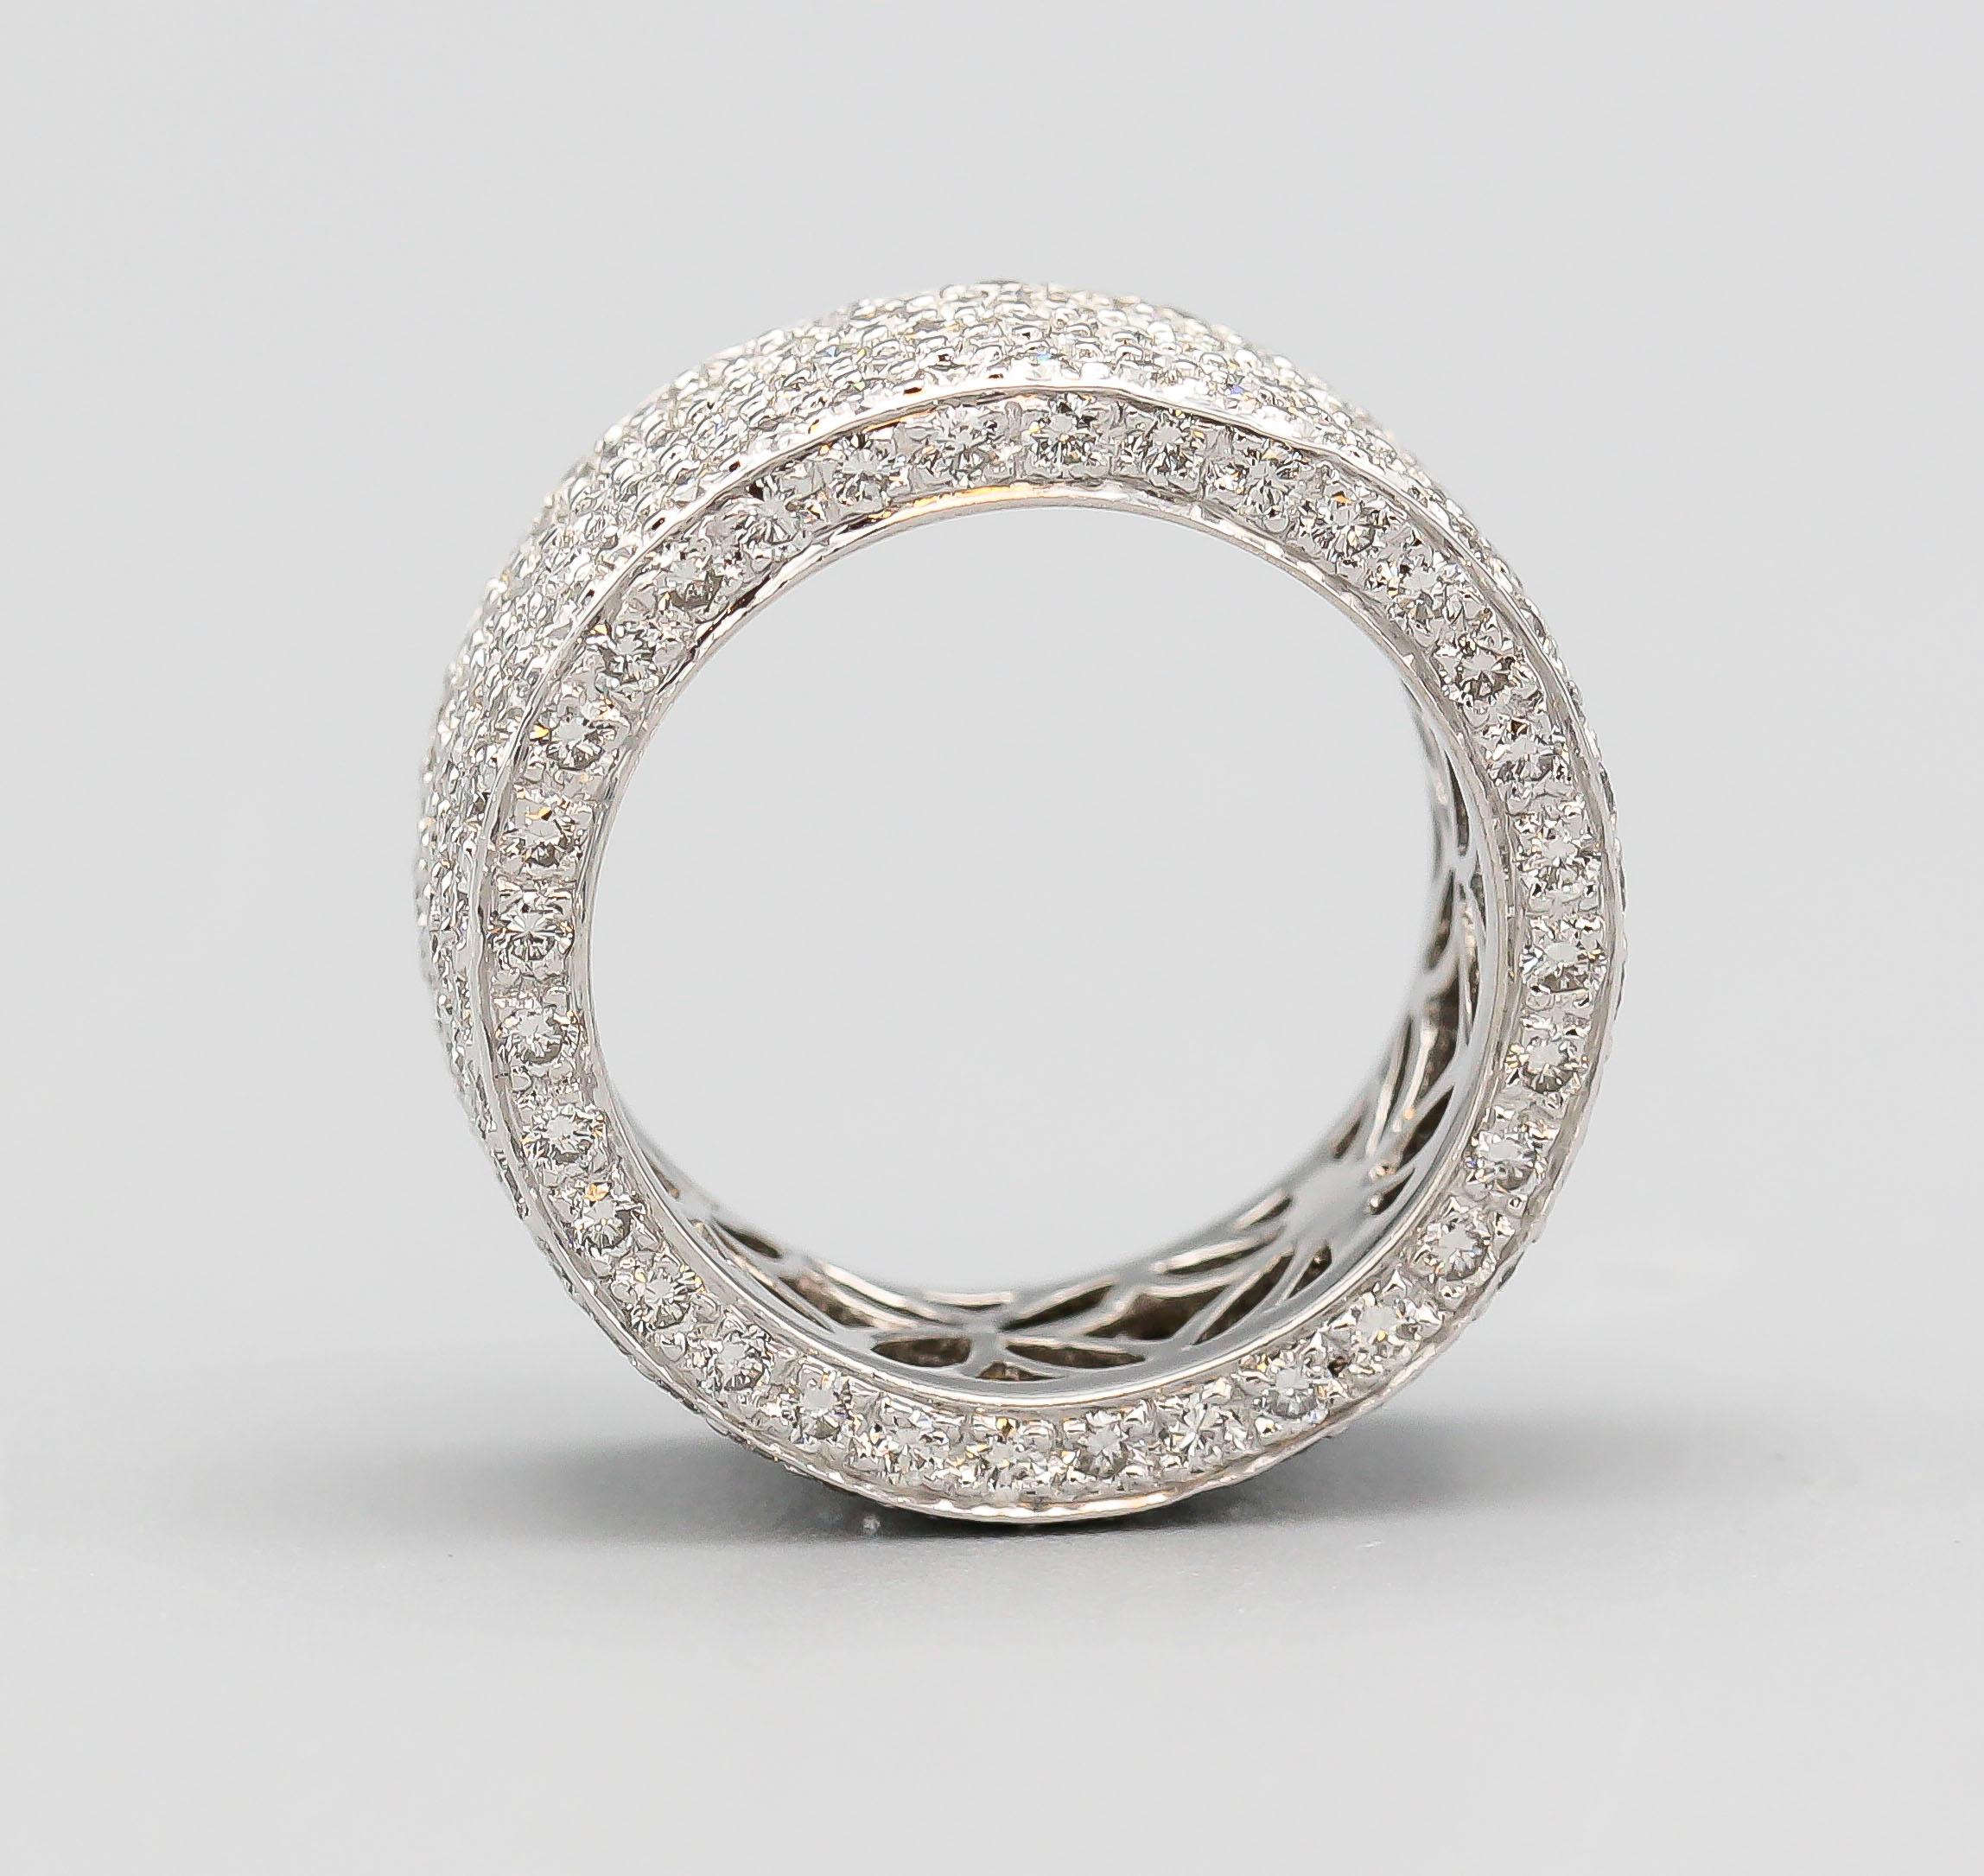 Bracelet en diamants fins et or blanc 18k.  Comprend environ 4,30 carats de diamants ronds de taille brillant de couleur G-H et de pureté VS. Taille 6,25 et largeur d'environ 9 mm.

Poinçons : K18, D 4.30

